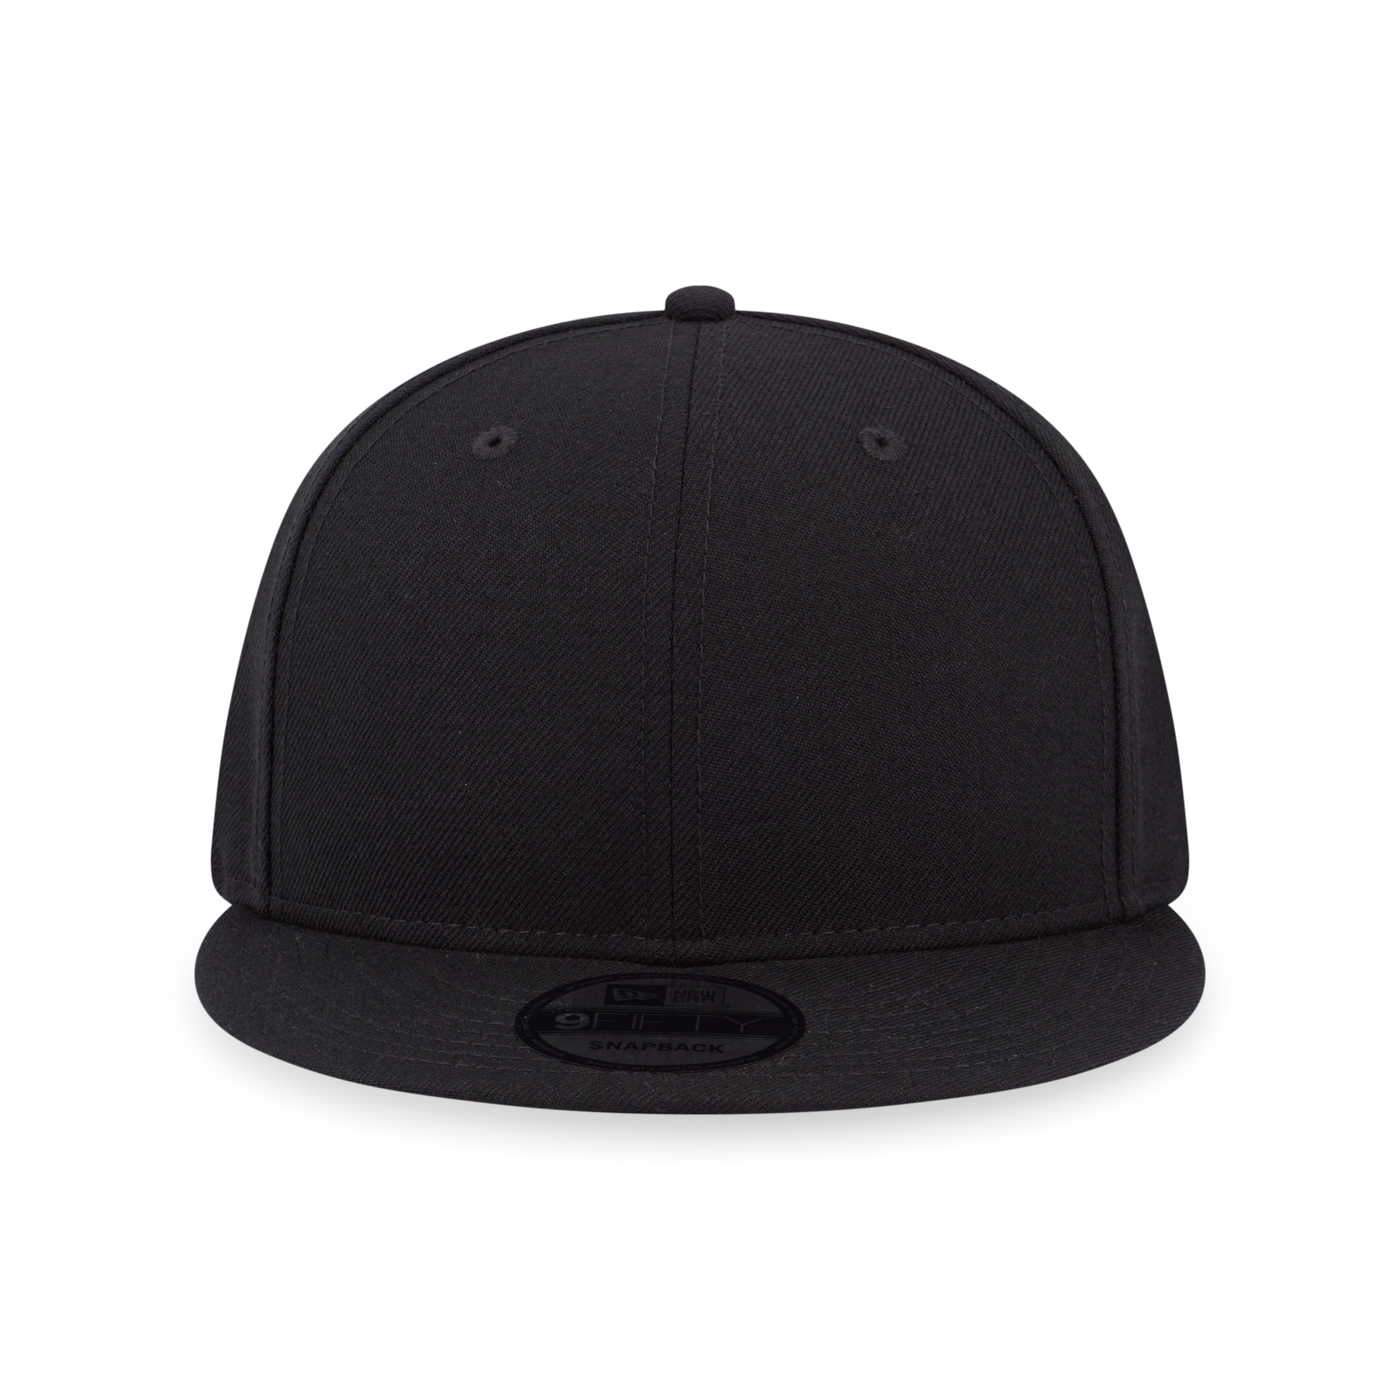 NEW ERA ALL BLACK BLACK 9FIFTY CAP